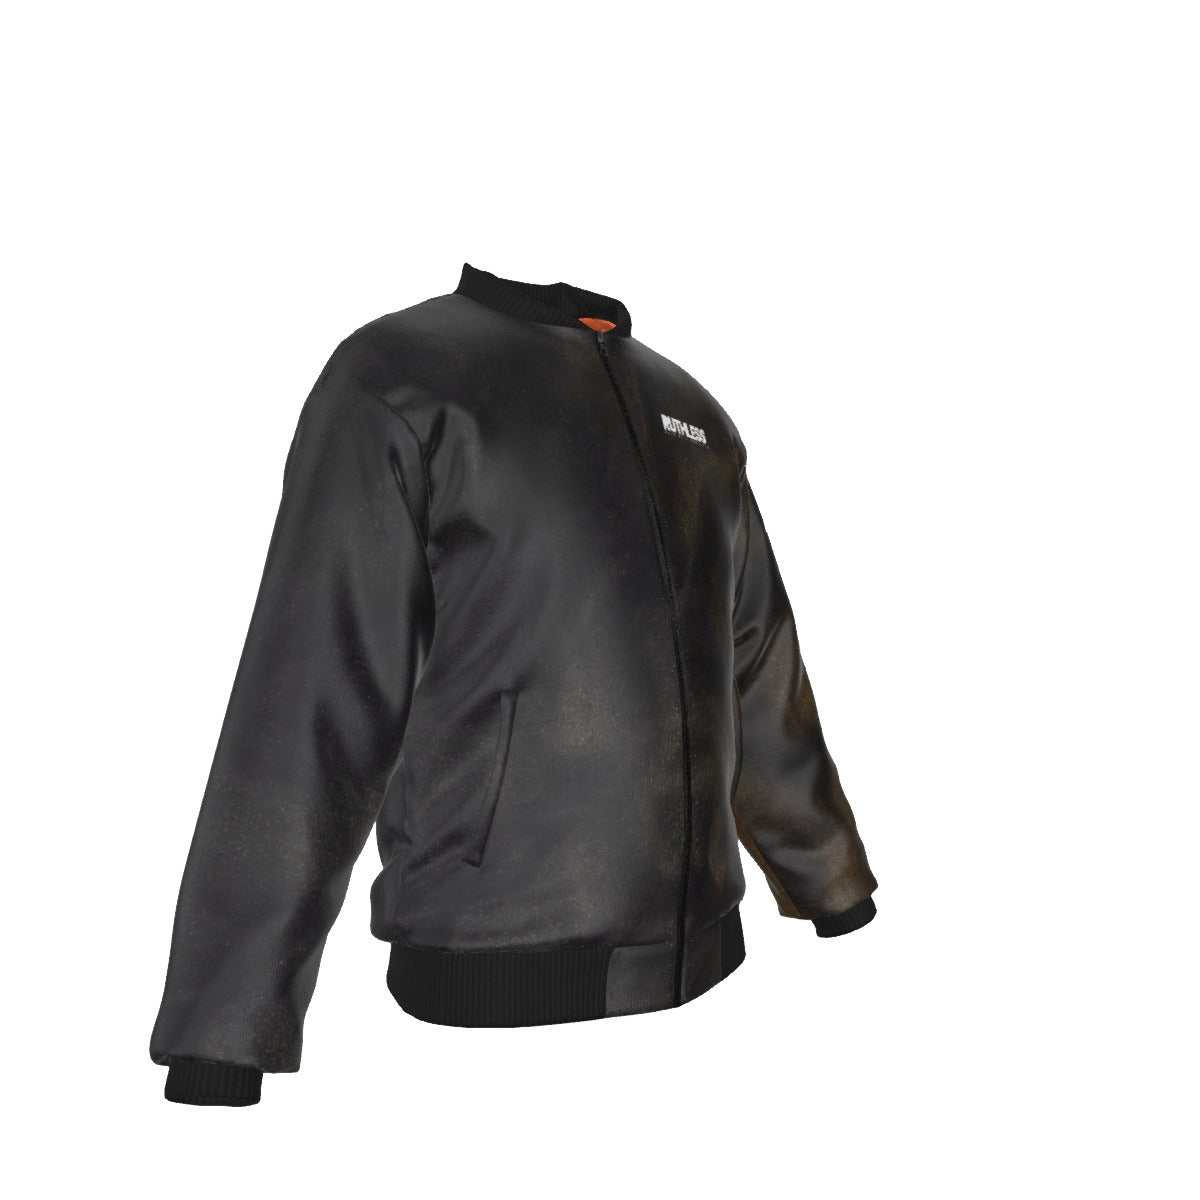 Aged Leather Jacket